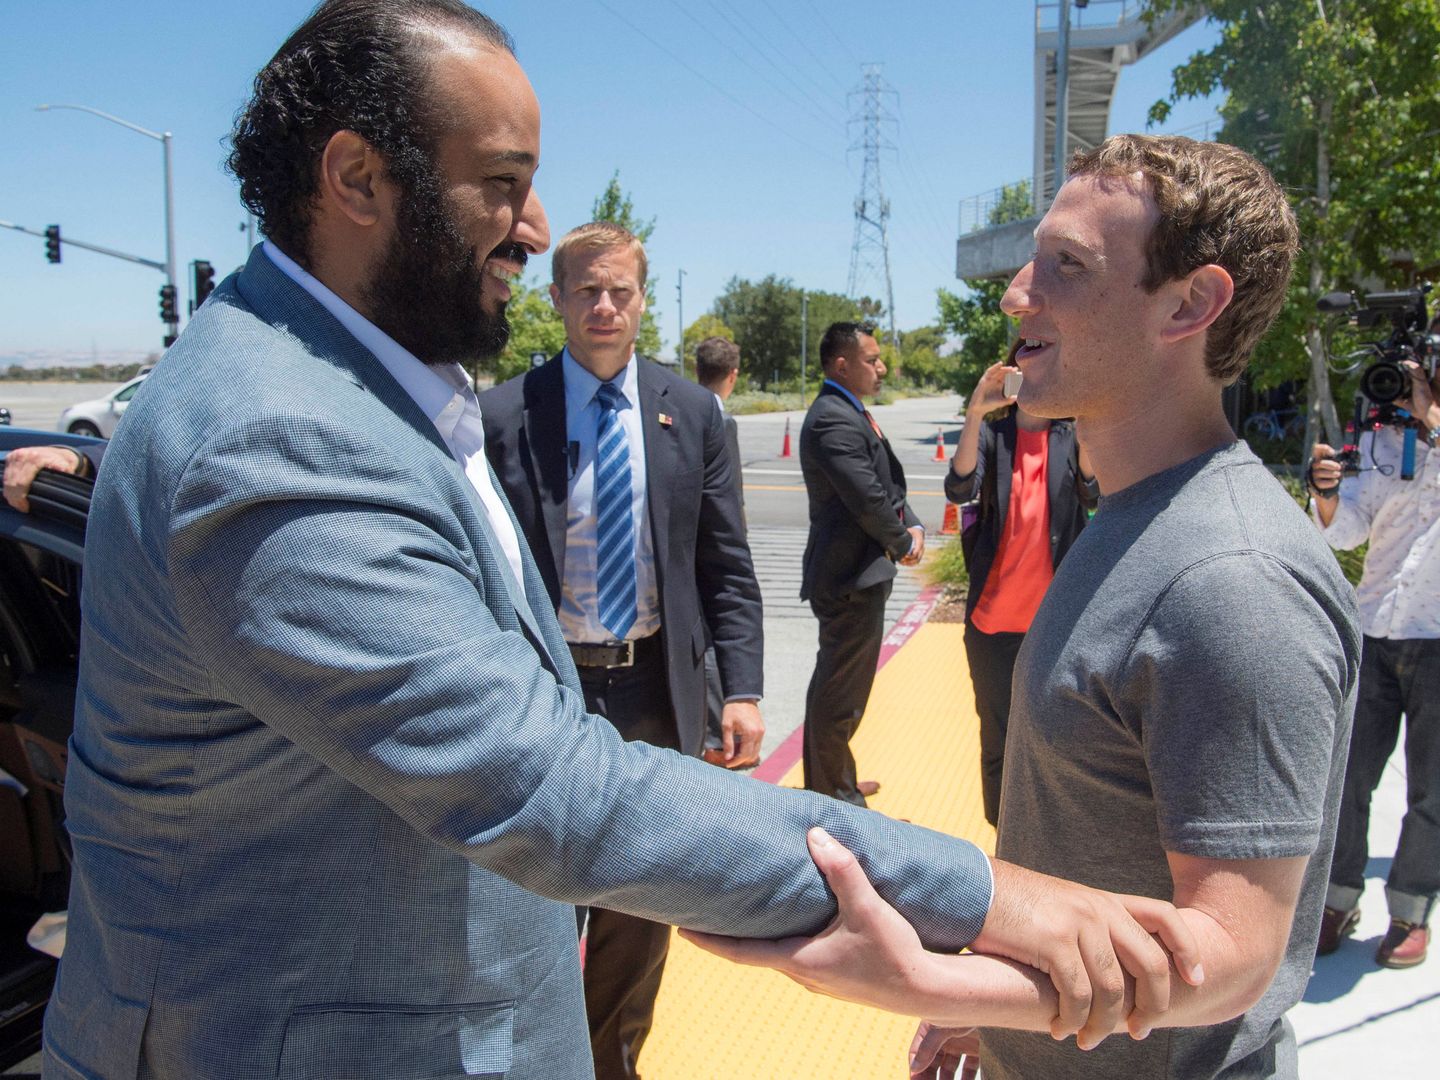 El príncipe Mohamed bin Salman junto a Mark Zuckerberg en Silicon Valley. (Reuters)